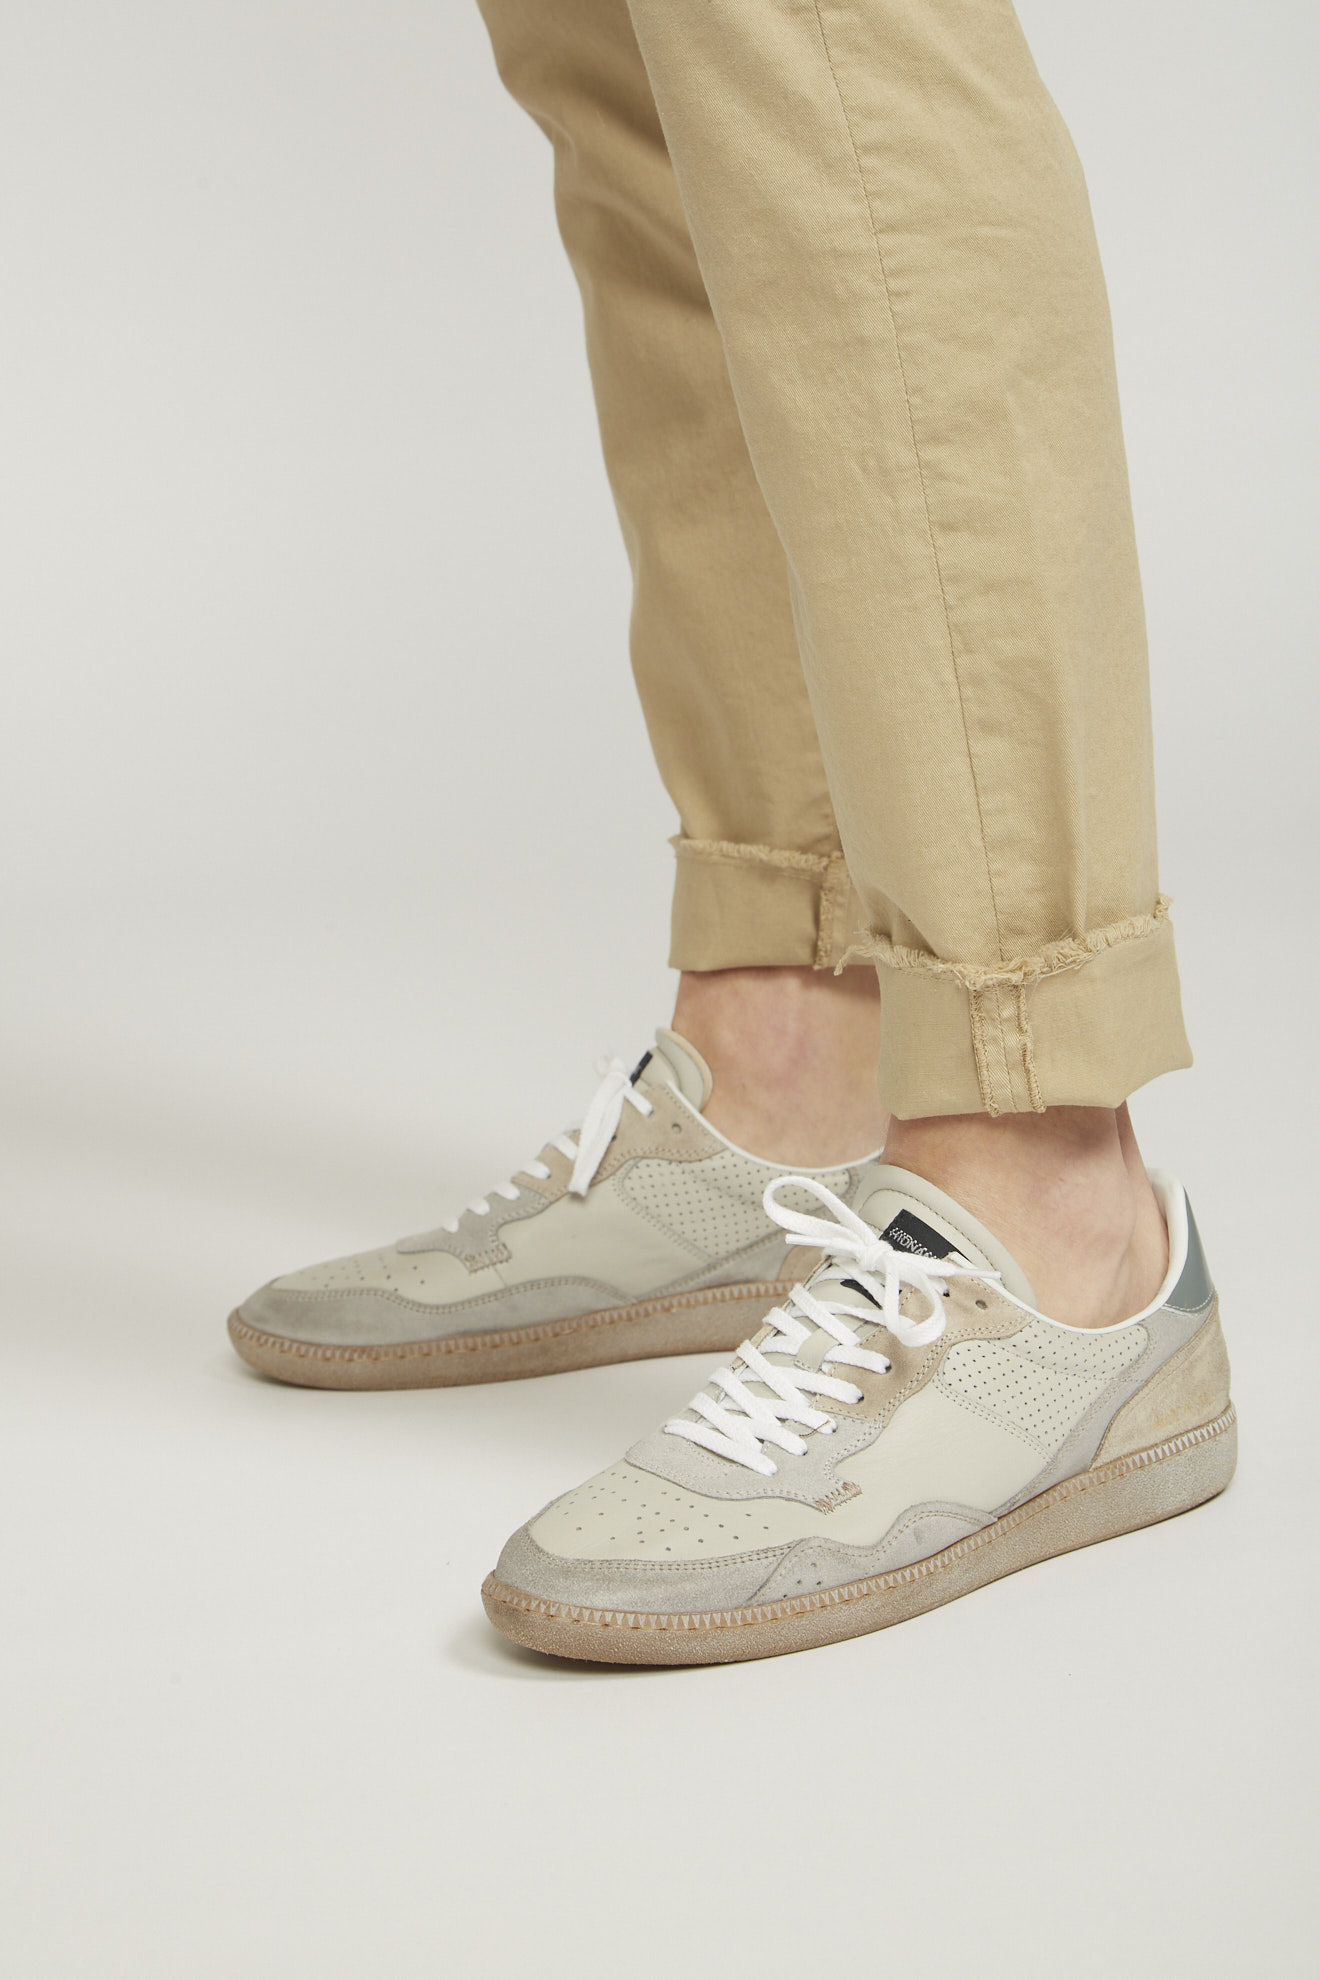 hidnander shoes beige white&grey details leather model side